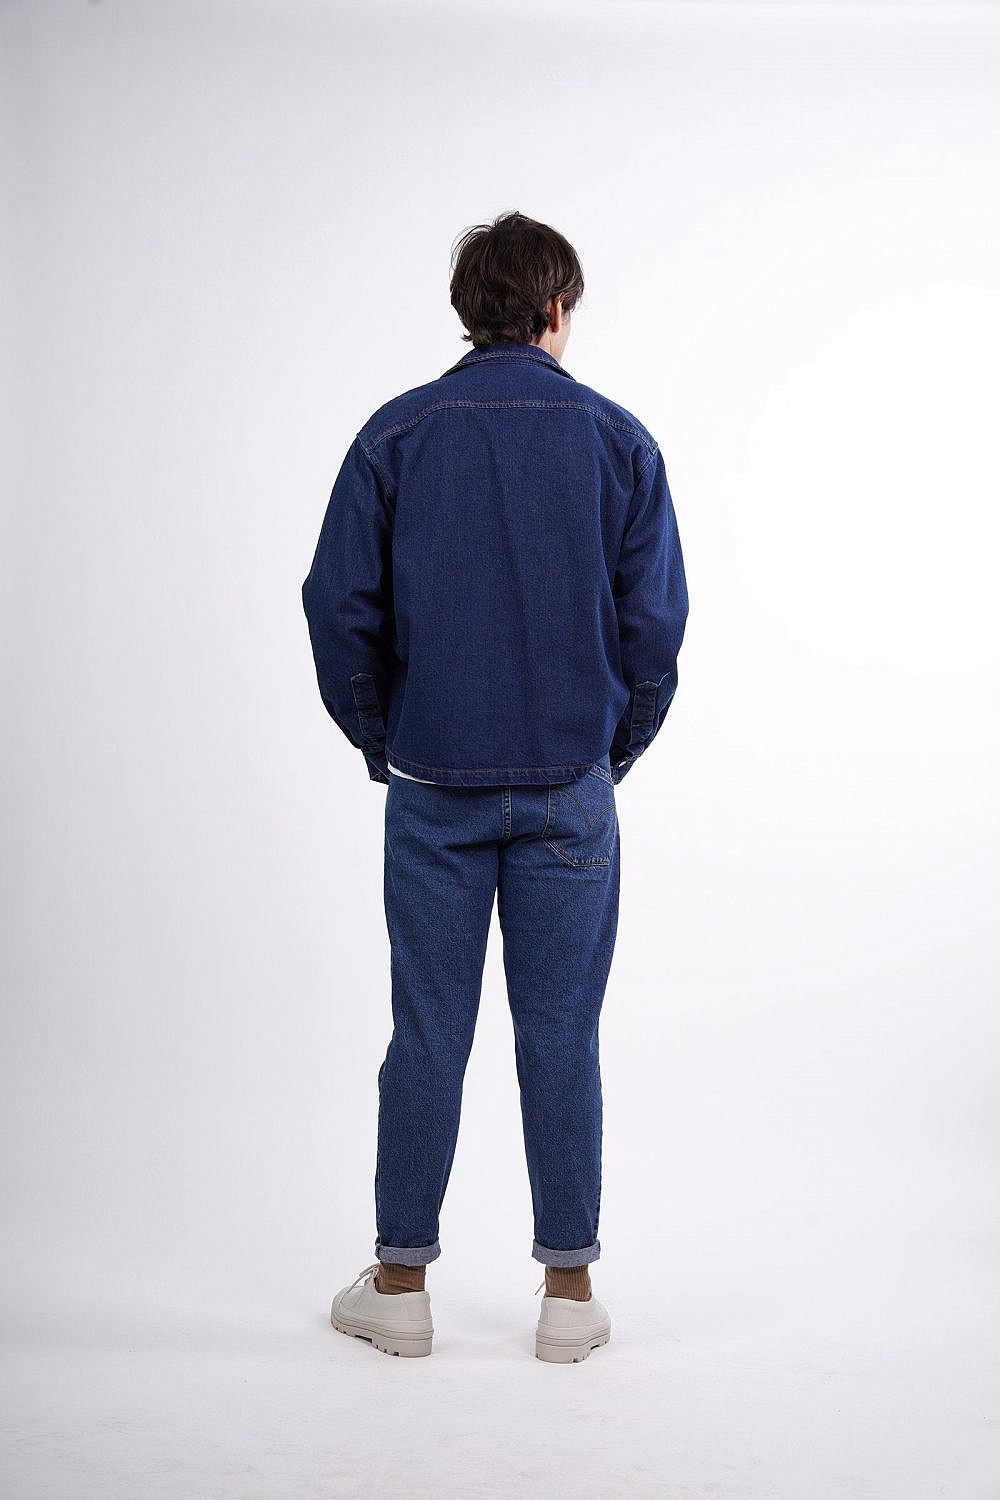 ג׳ינס עם כיס אחורי אחד של דורון אשכנזי. 399 ש״ח | צילום: נדב יהלומי